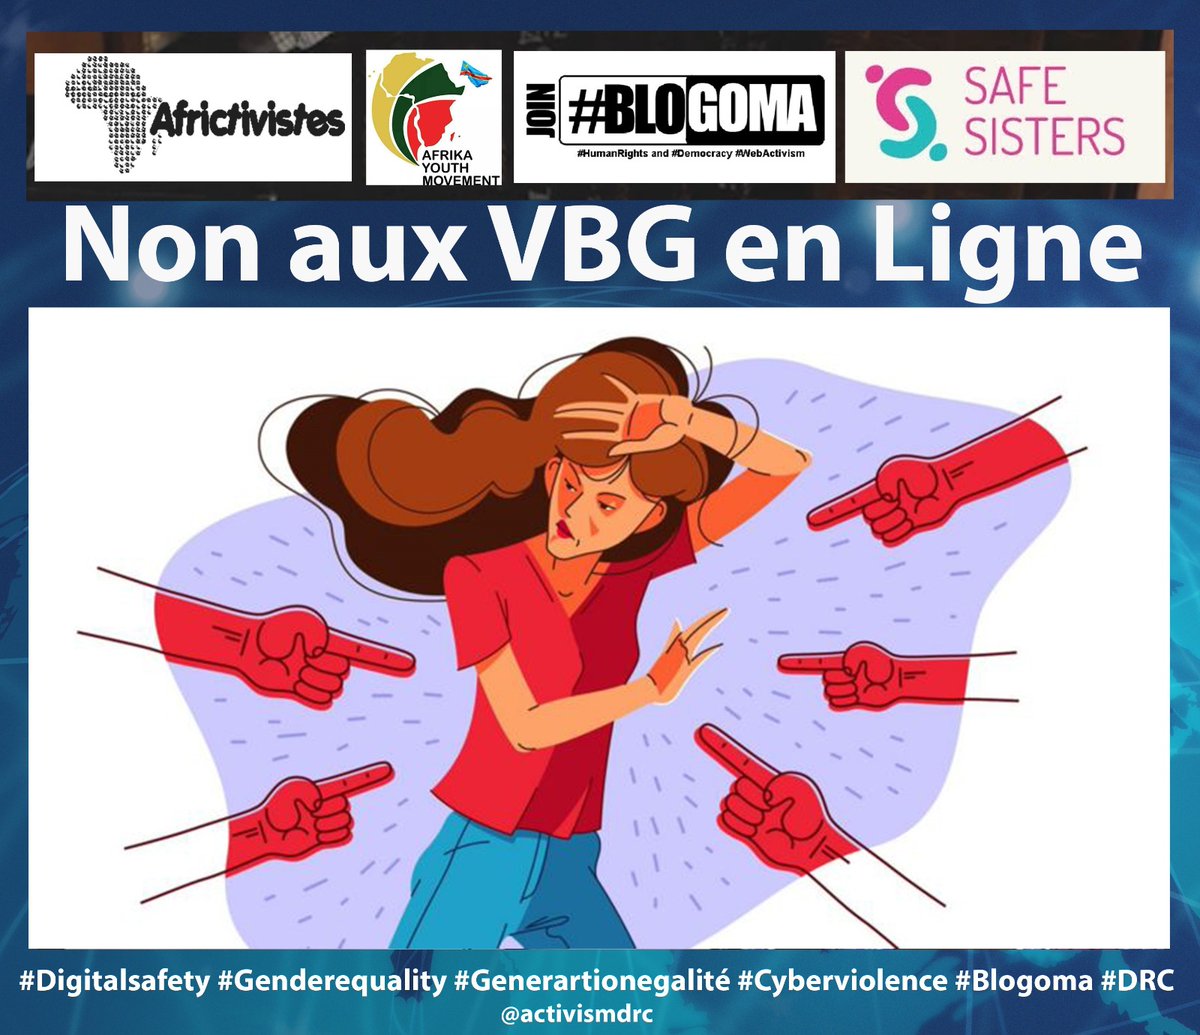 Avez-vous déjà entendu parler des Violences Basées sur le genre en ligne ou en être victime ?
Pour en parler, participez à cette campagne du 13 au 23 mars 2023
#Digitalsafety 
#Genderequality
#Generationegalité
#Cyberviolence
#Blogoma
#DRC